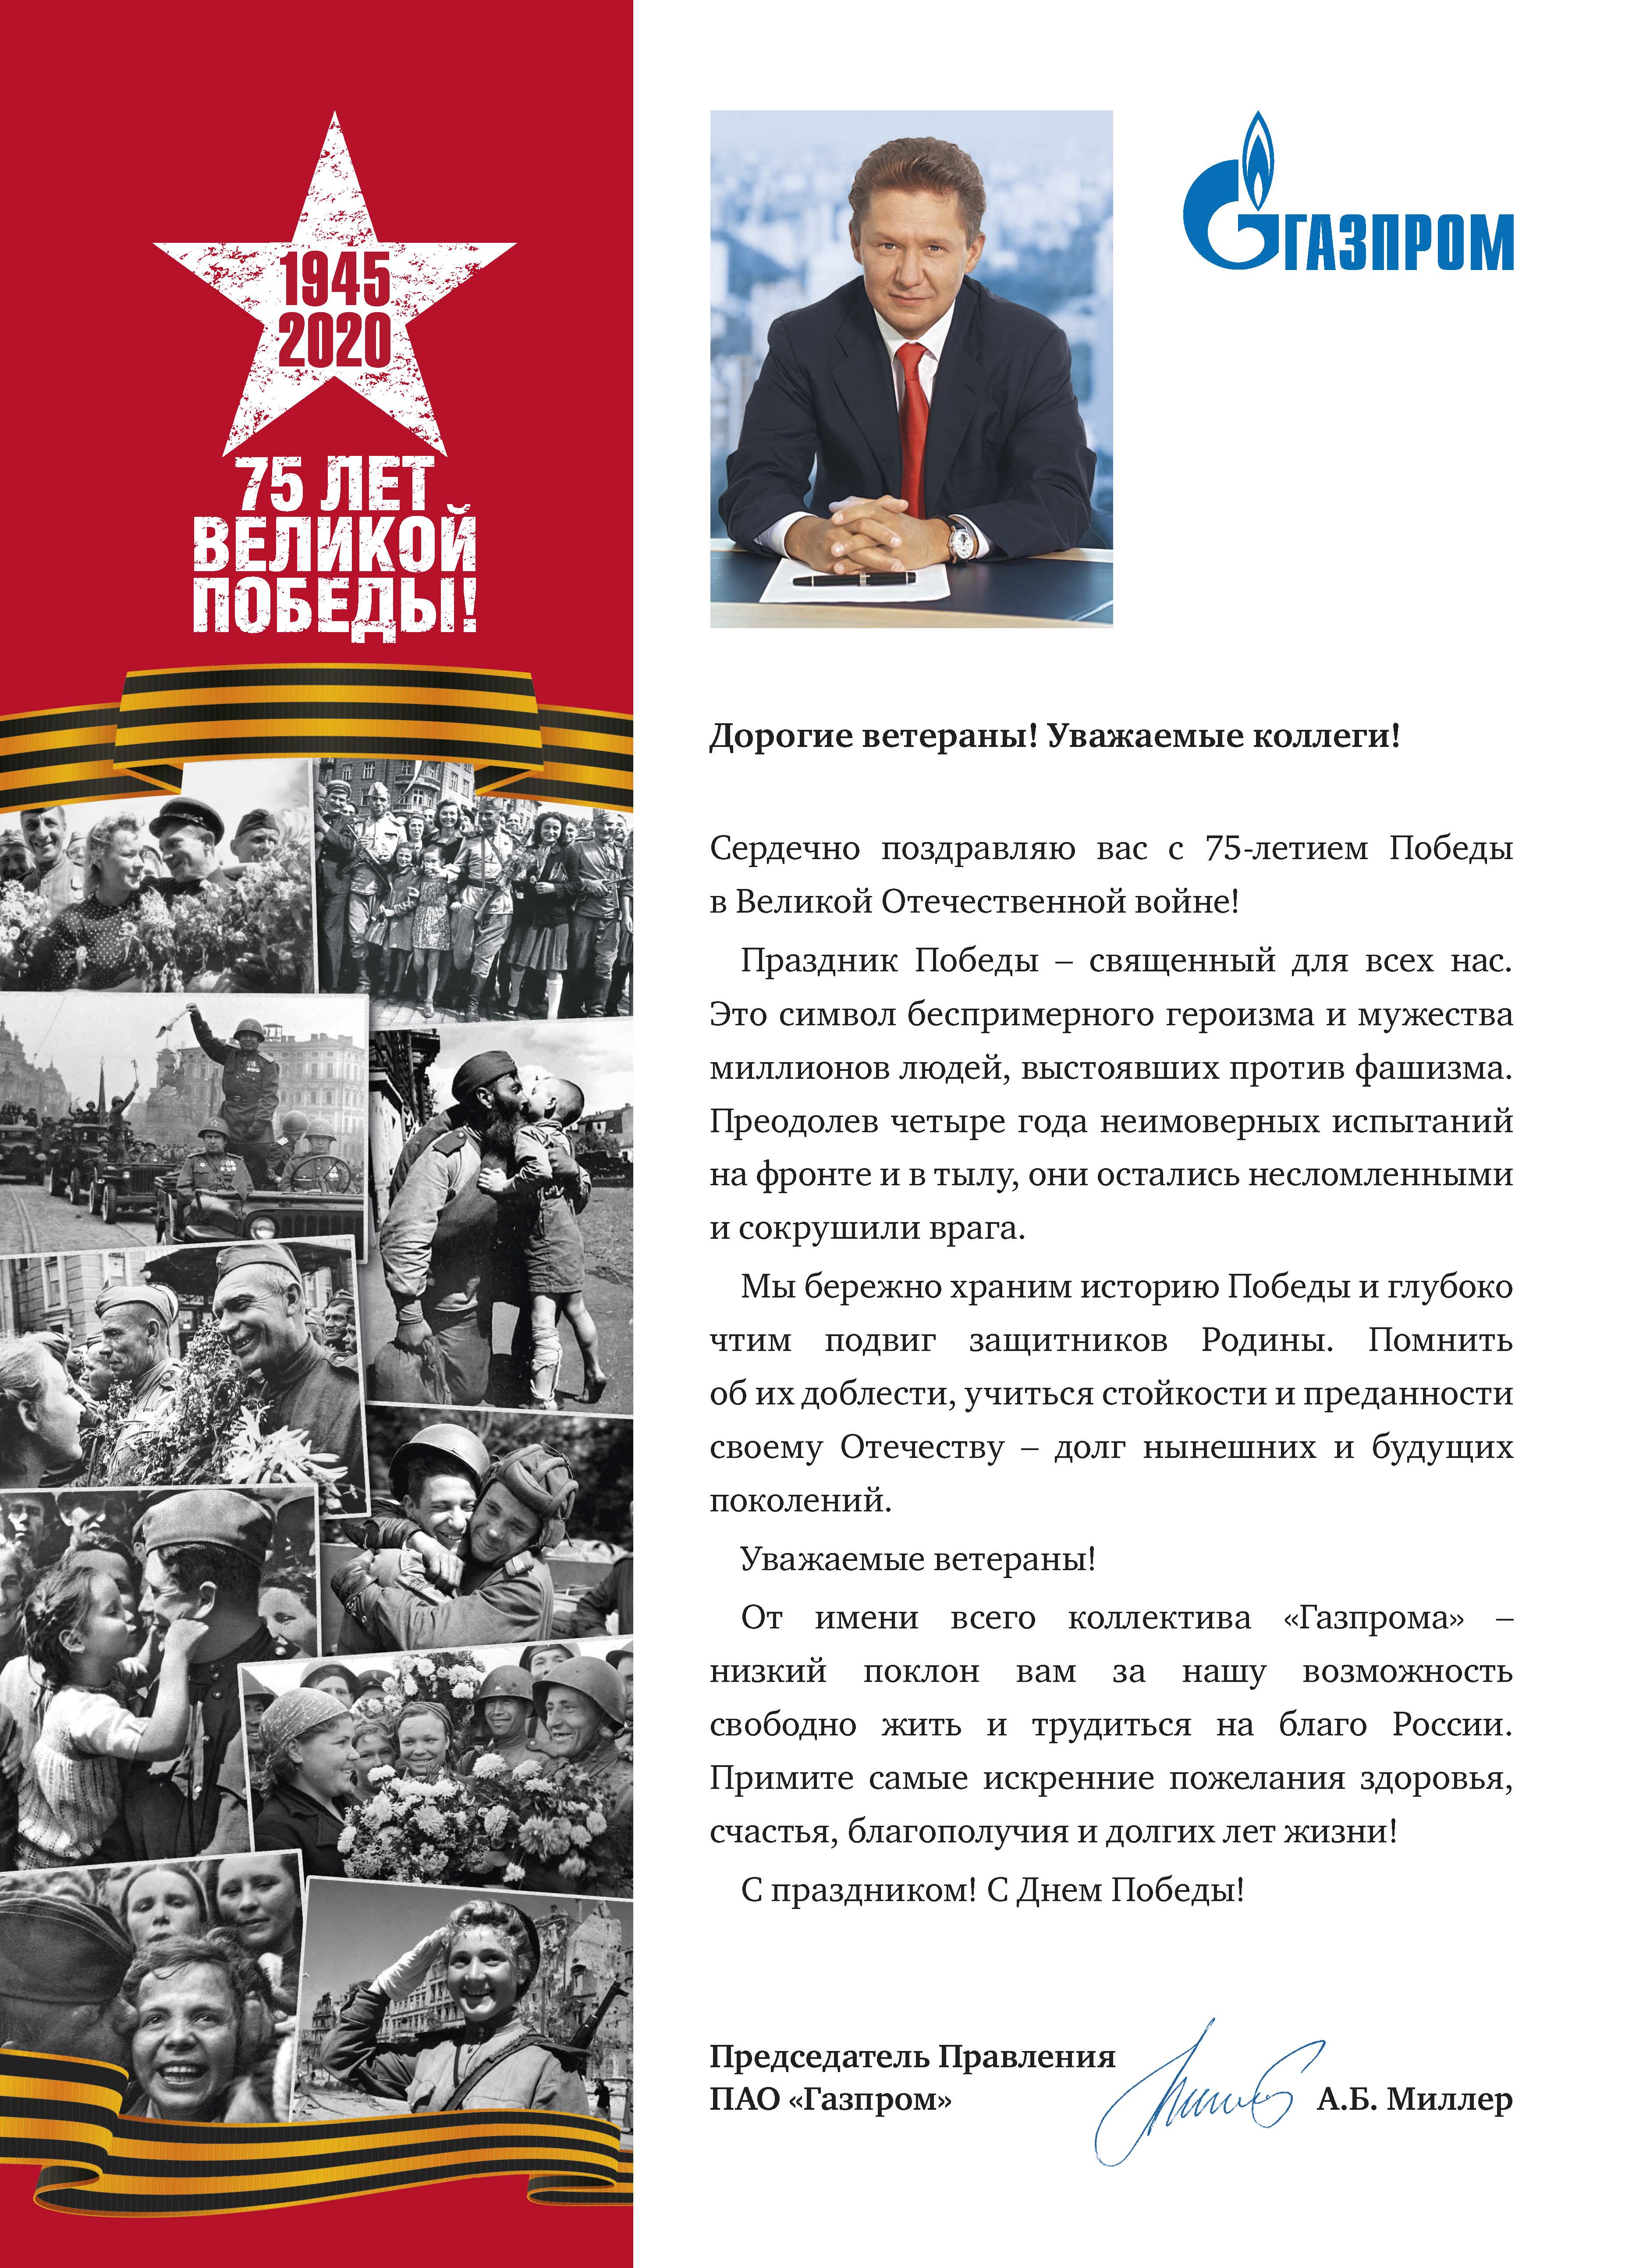 Поздравление с 75-летием Победы в Великой Отечественной войне Председателя правления ПАО "Газпром" А.Б. Миллера